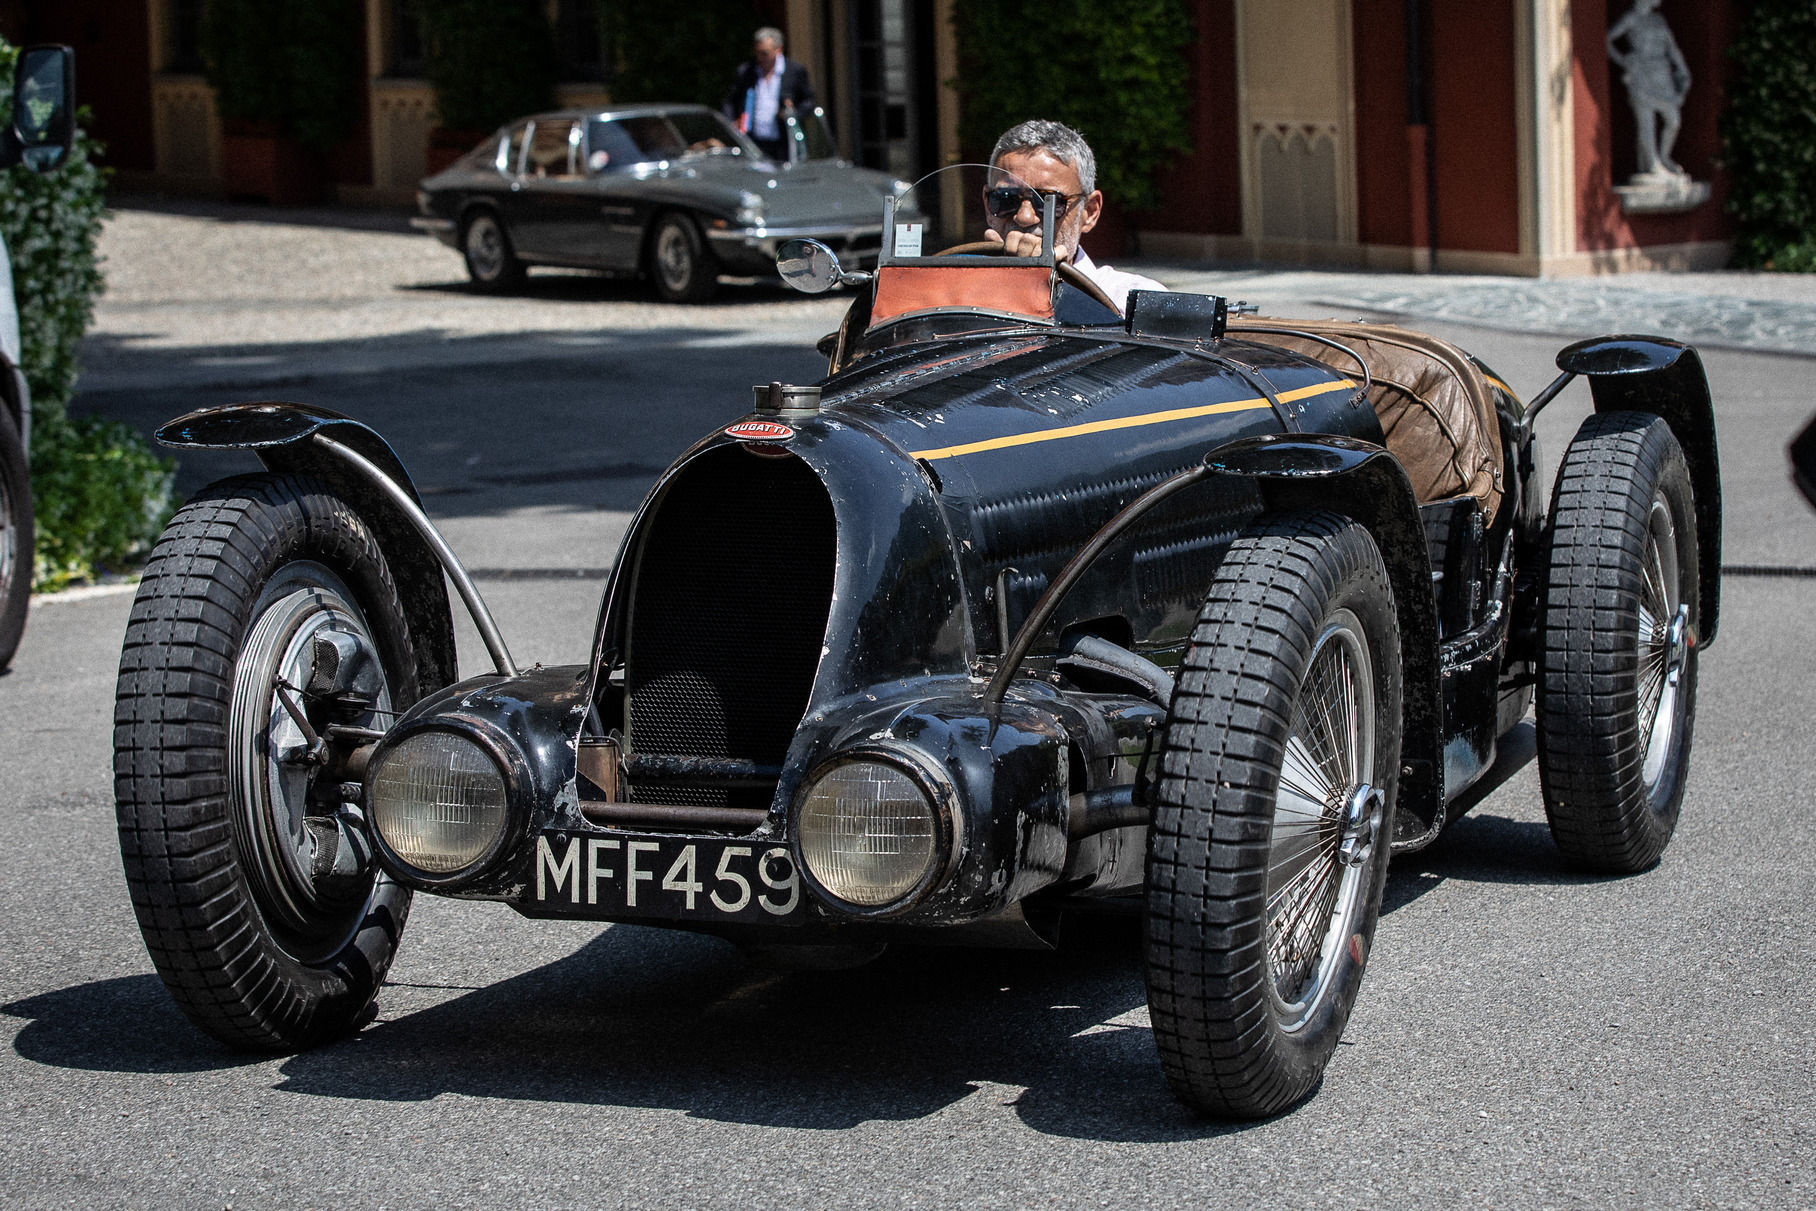 Машина была построена в 1934 году для заводской команды Bugatti, для участия в гонках Гран-При в «750-килограммовом» классе. Болид получил рядную «восьмёрку» 3.3 с компрессором Roots мощностью 250 лошадиных сил. К сезону-1937 компрессор демонтировали, а машину переделали под гонки спорткаров. В этом виде она и попала к патрону марки, королю Леопольду III. С тех пор у неё сменилось всего четыре владельца, которые поддерживали машину в исходном состоянии. Два года назад швейцарец Фриц Буркард (из семьи промышленников Буркард-Шенкер) приобрёл машину на аукционе за 12,6 миллиона долларов.